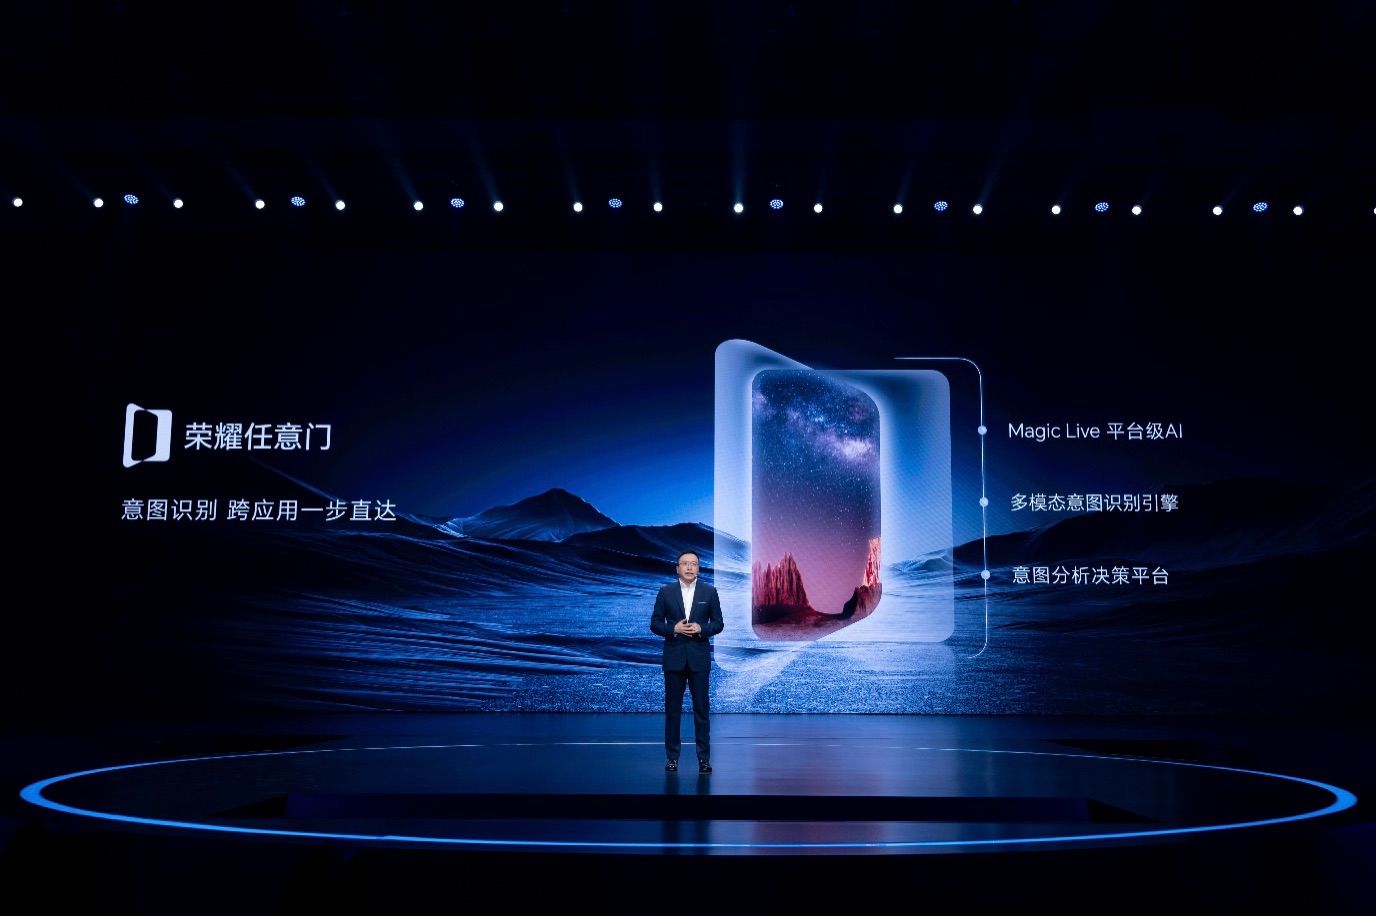 CEO da Honor, George Zhao, em pé em um palco com um slide projetado atrás dele com recursos do Magic OS 8.0